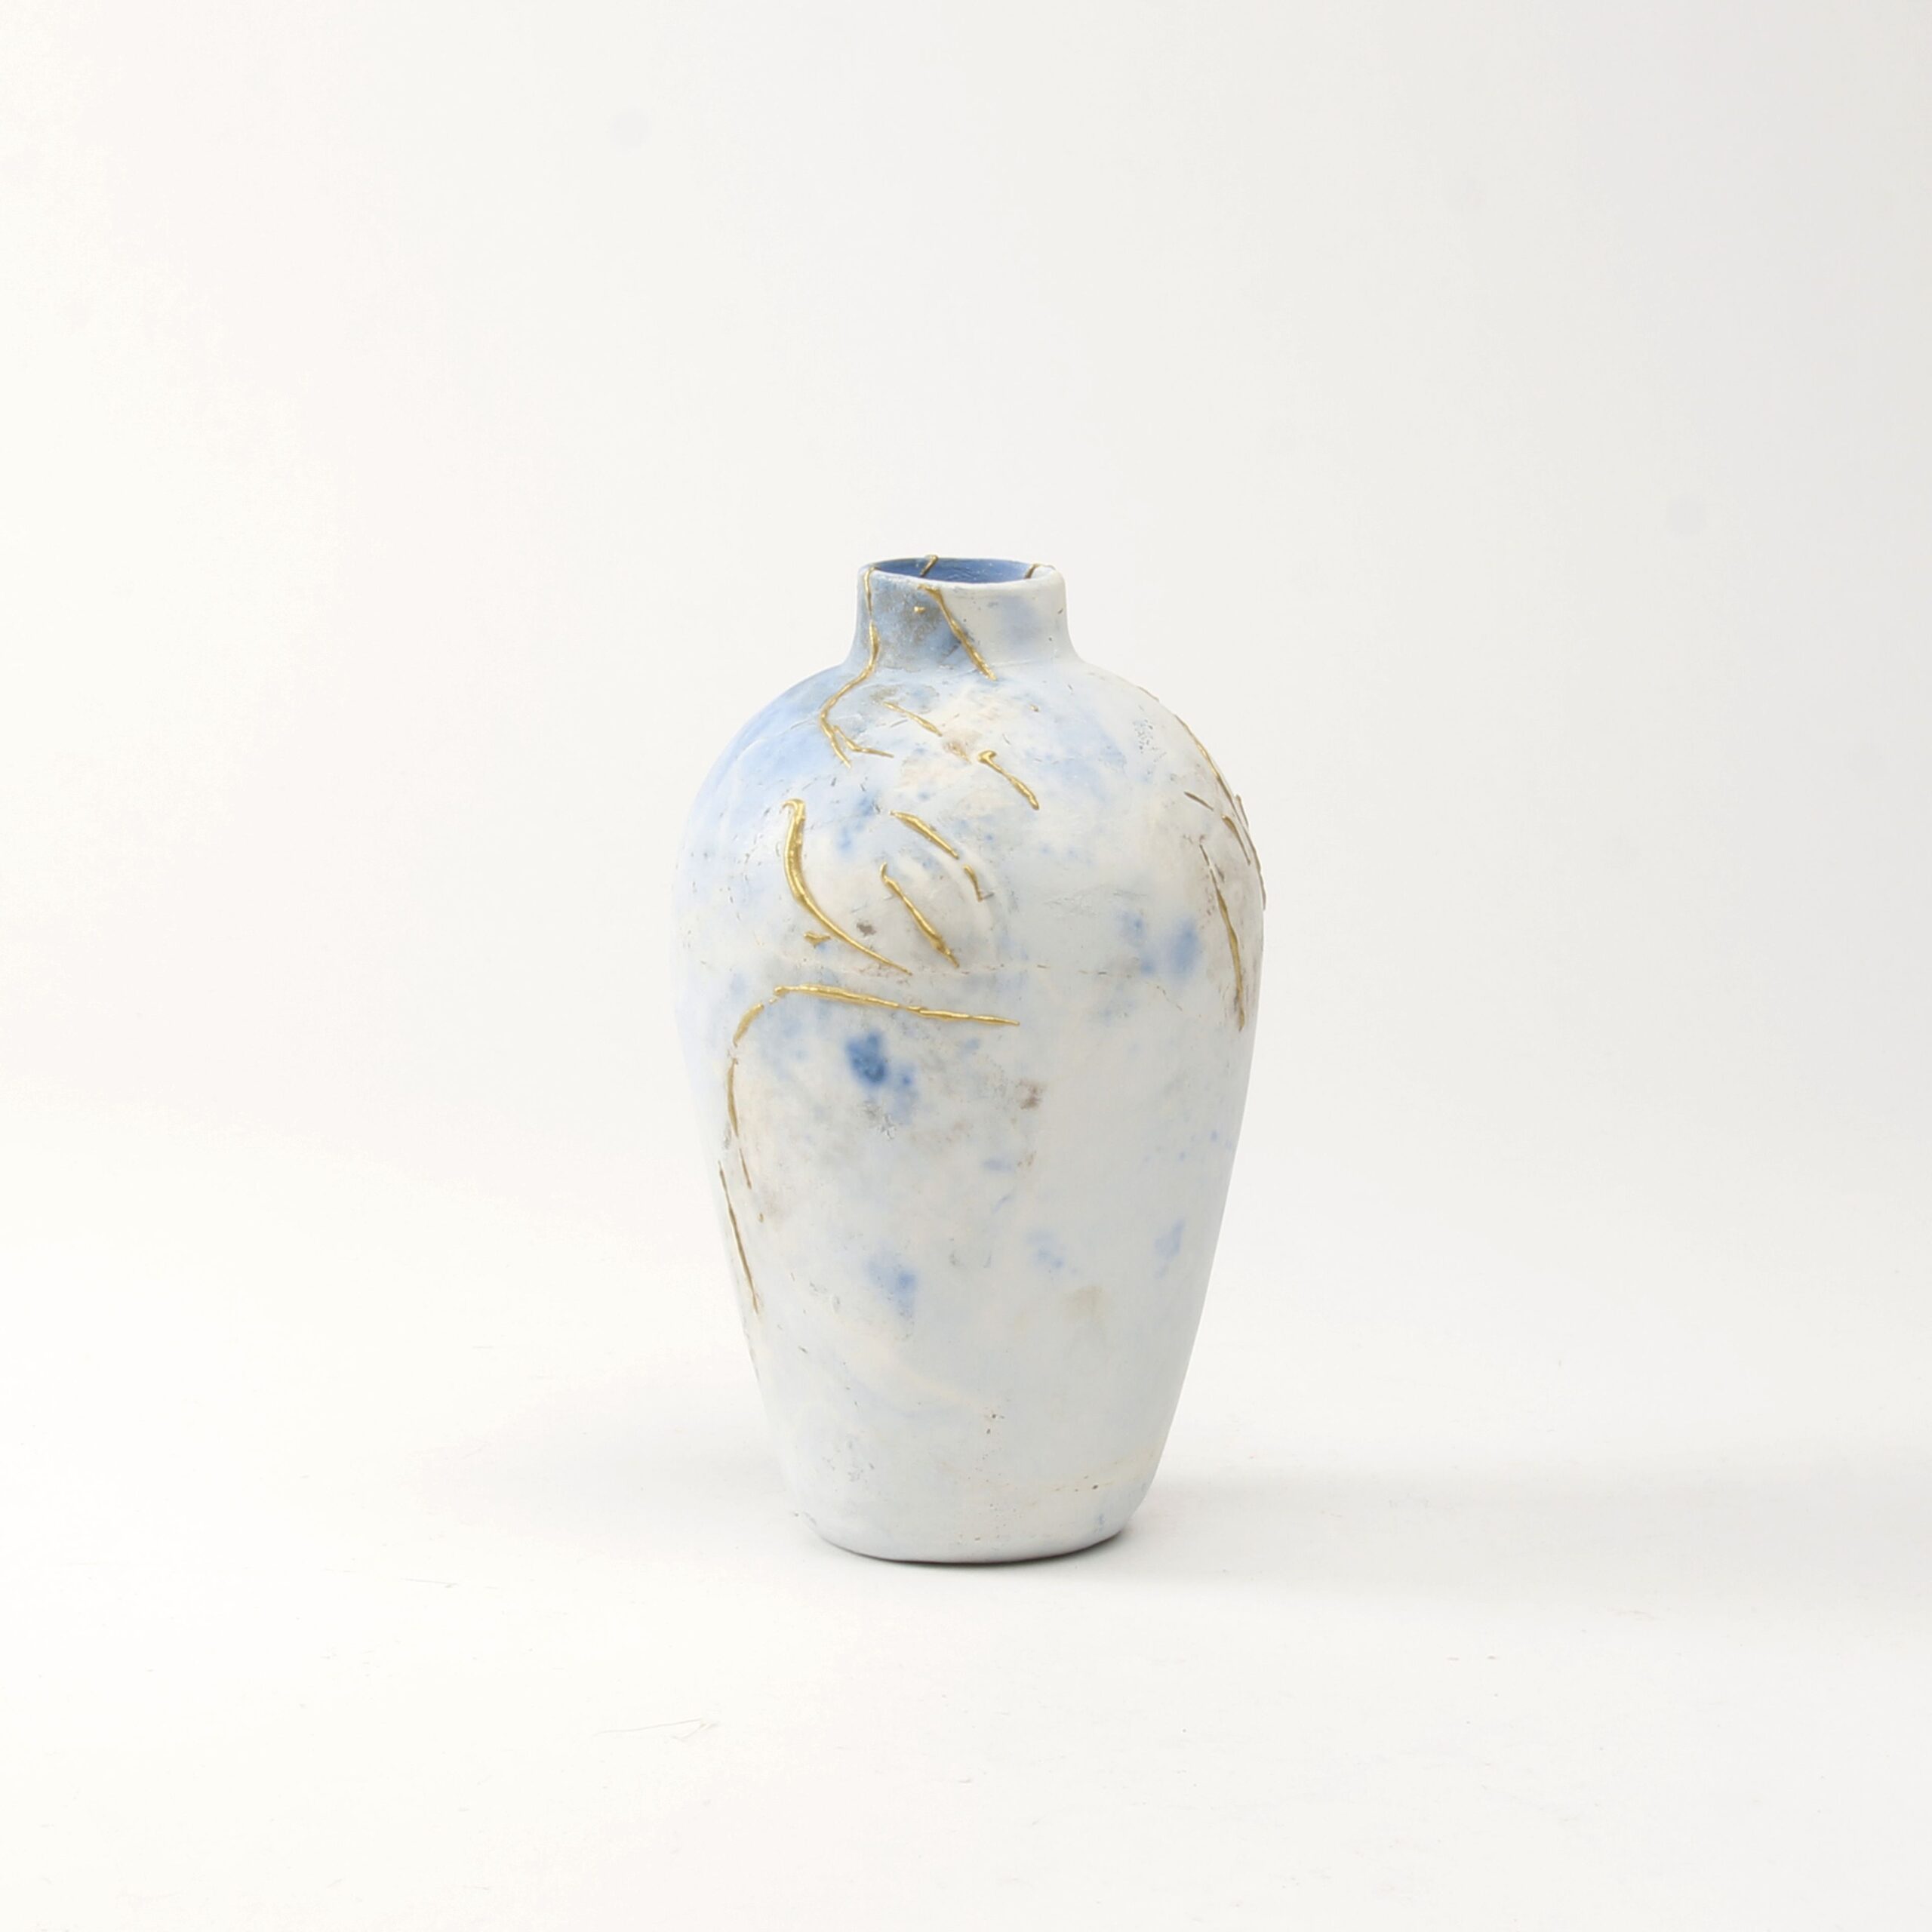 Alison Brannen: Medium Classic Urn Product Image 5 of 6